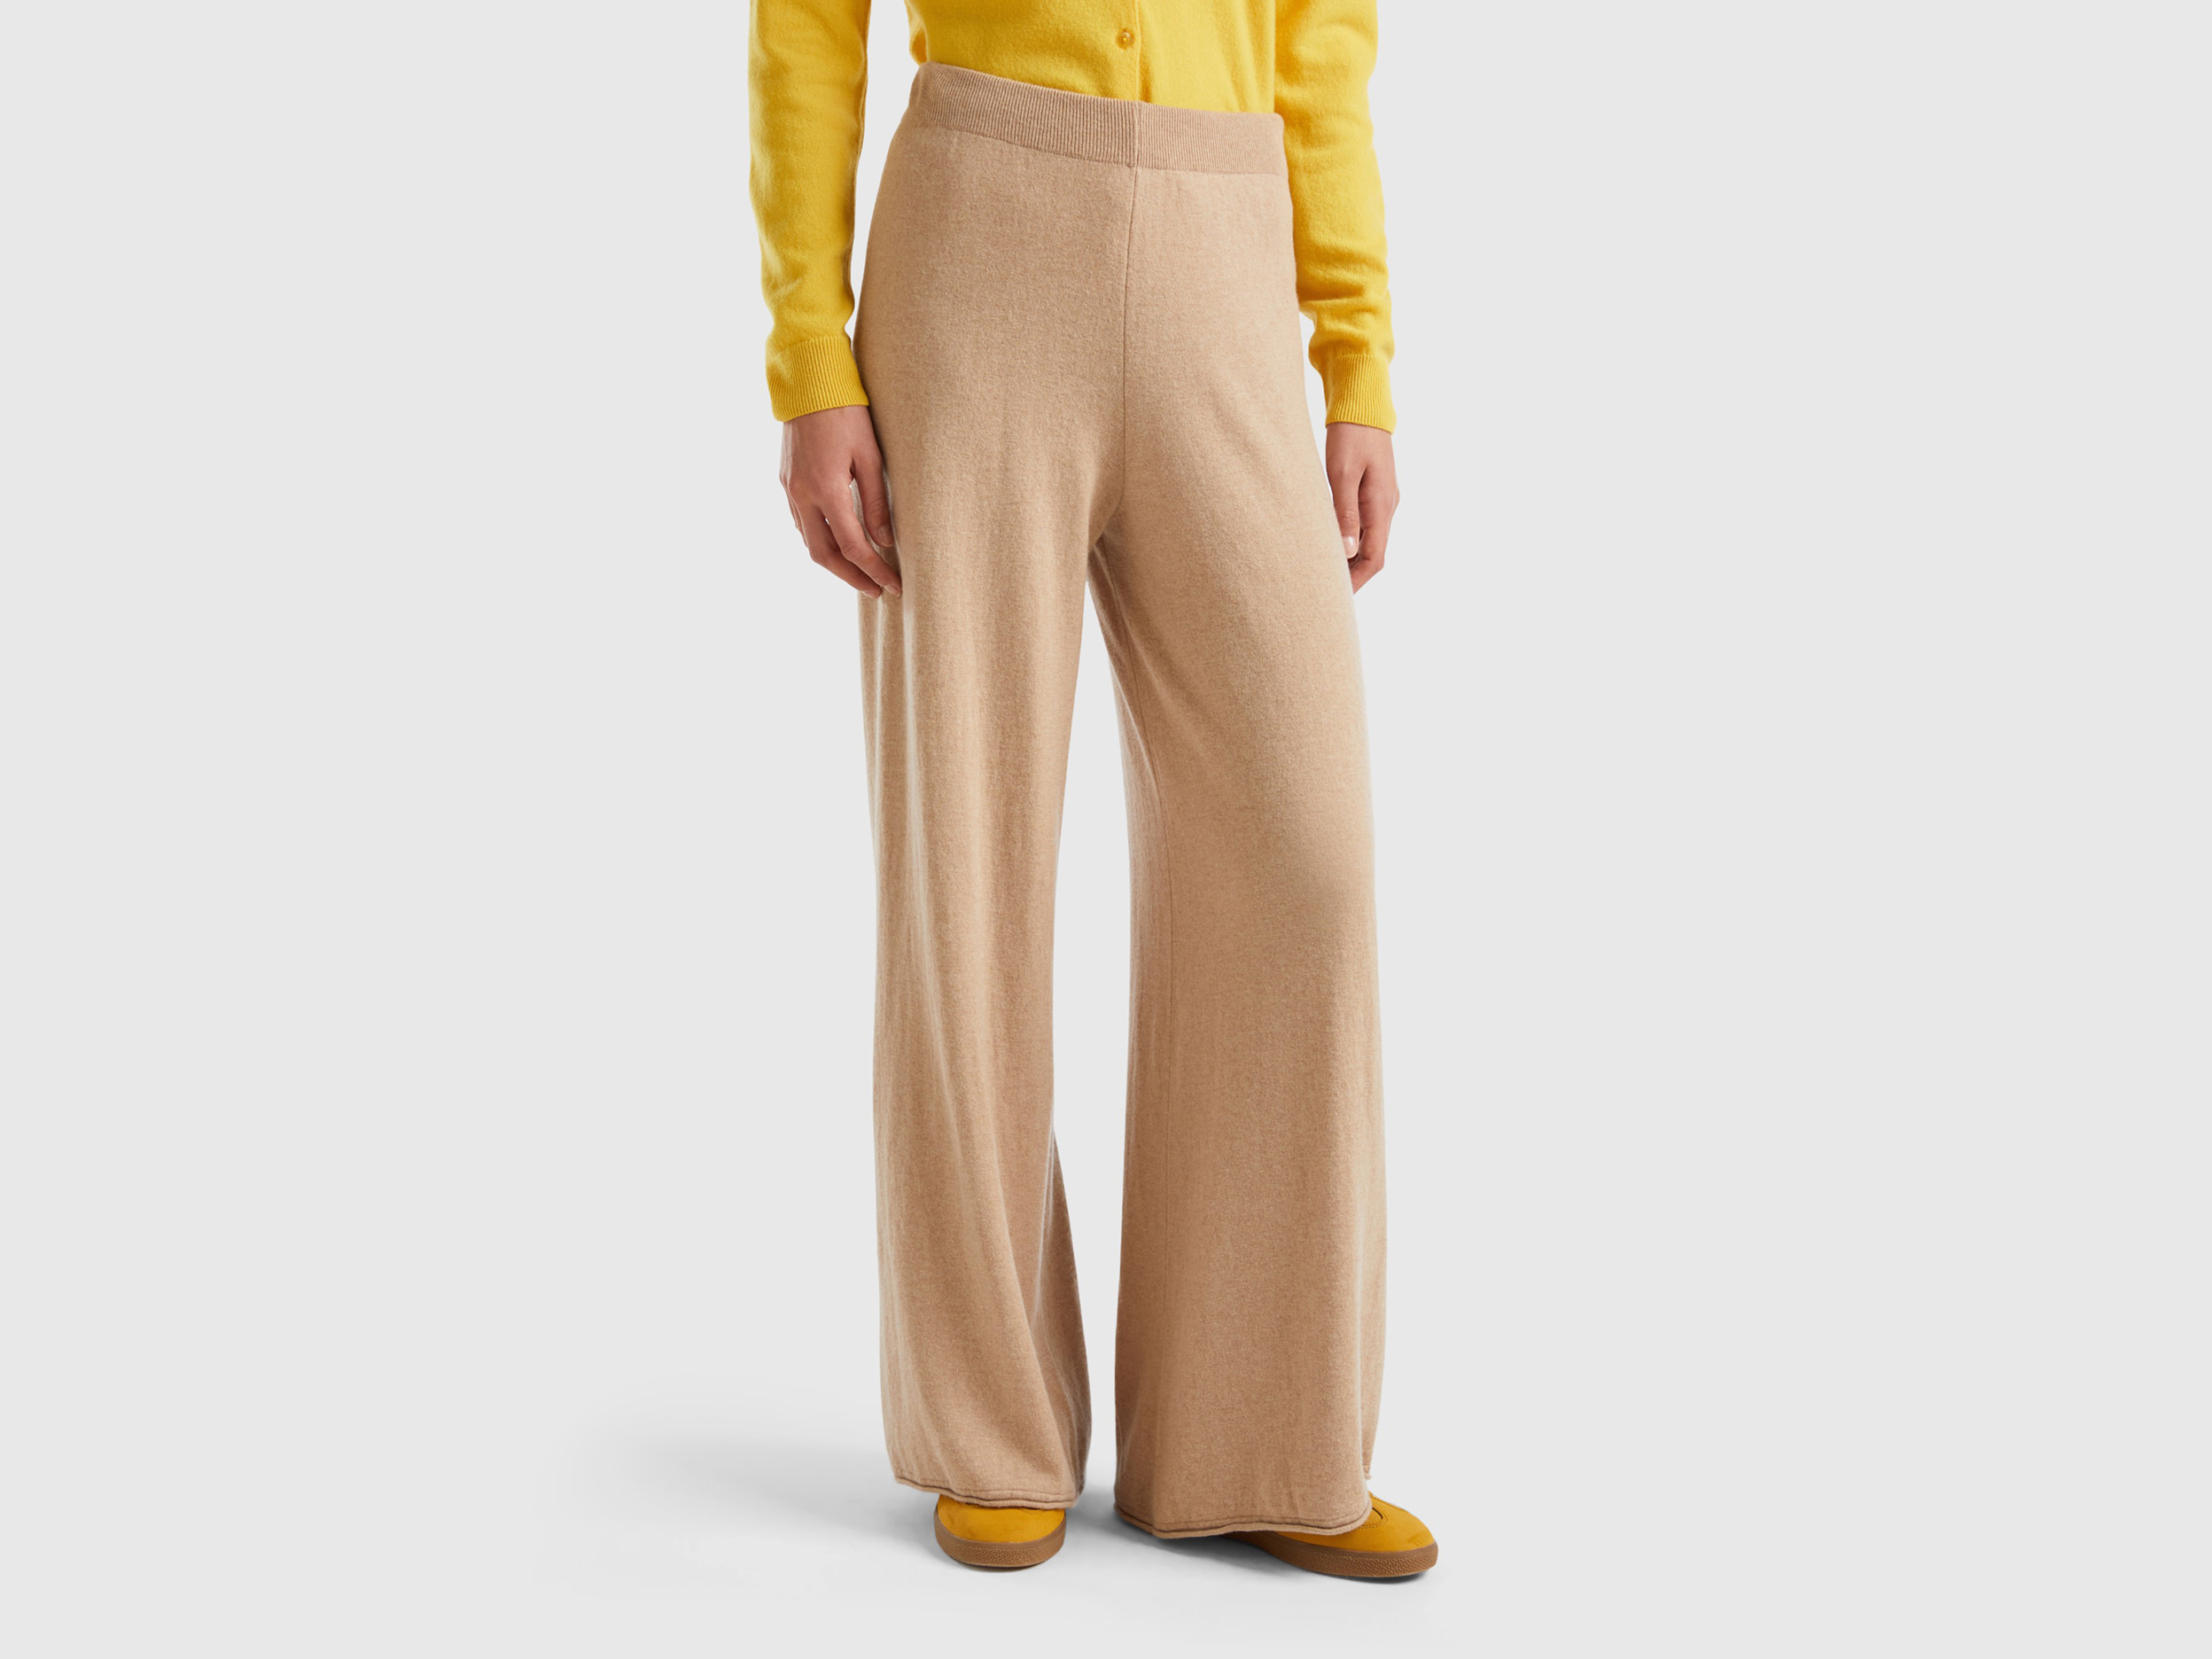 Benetton, Beige Wide Leg Trousers In Cashmere And Wool Blend, size XS, Beige, Women